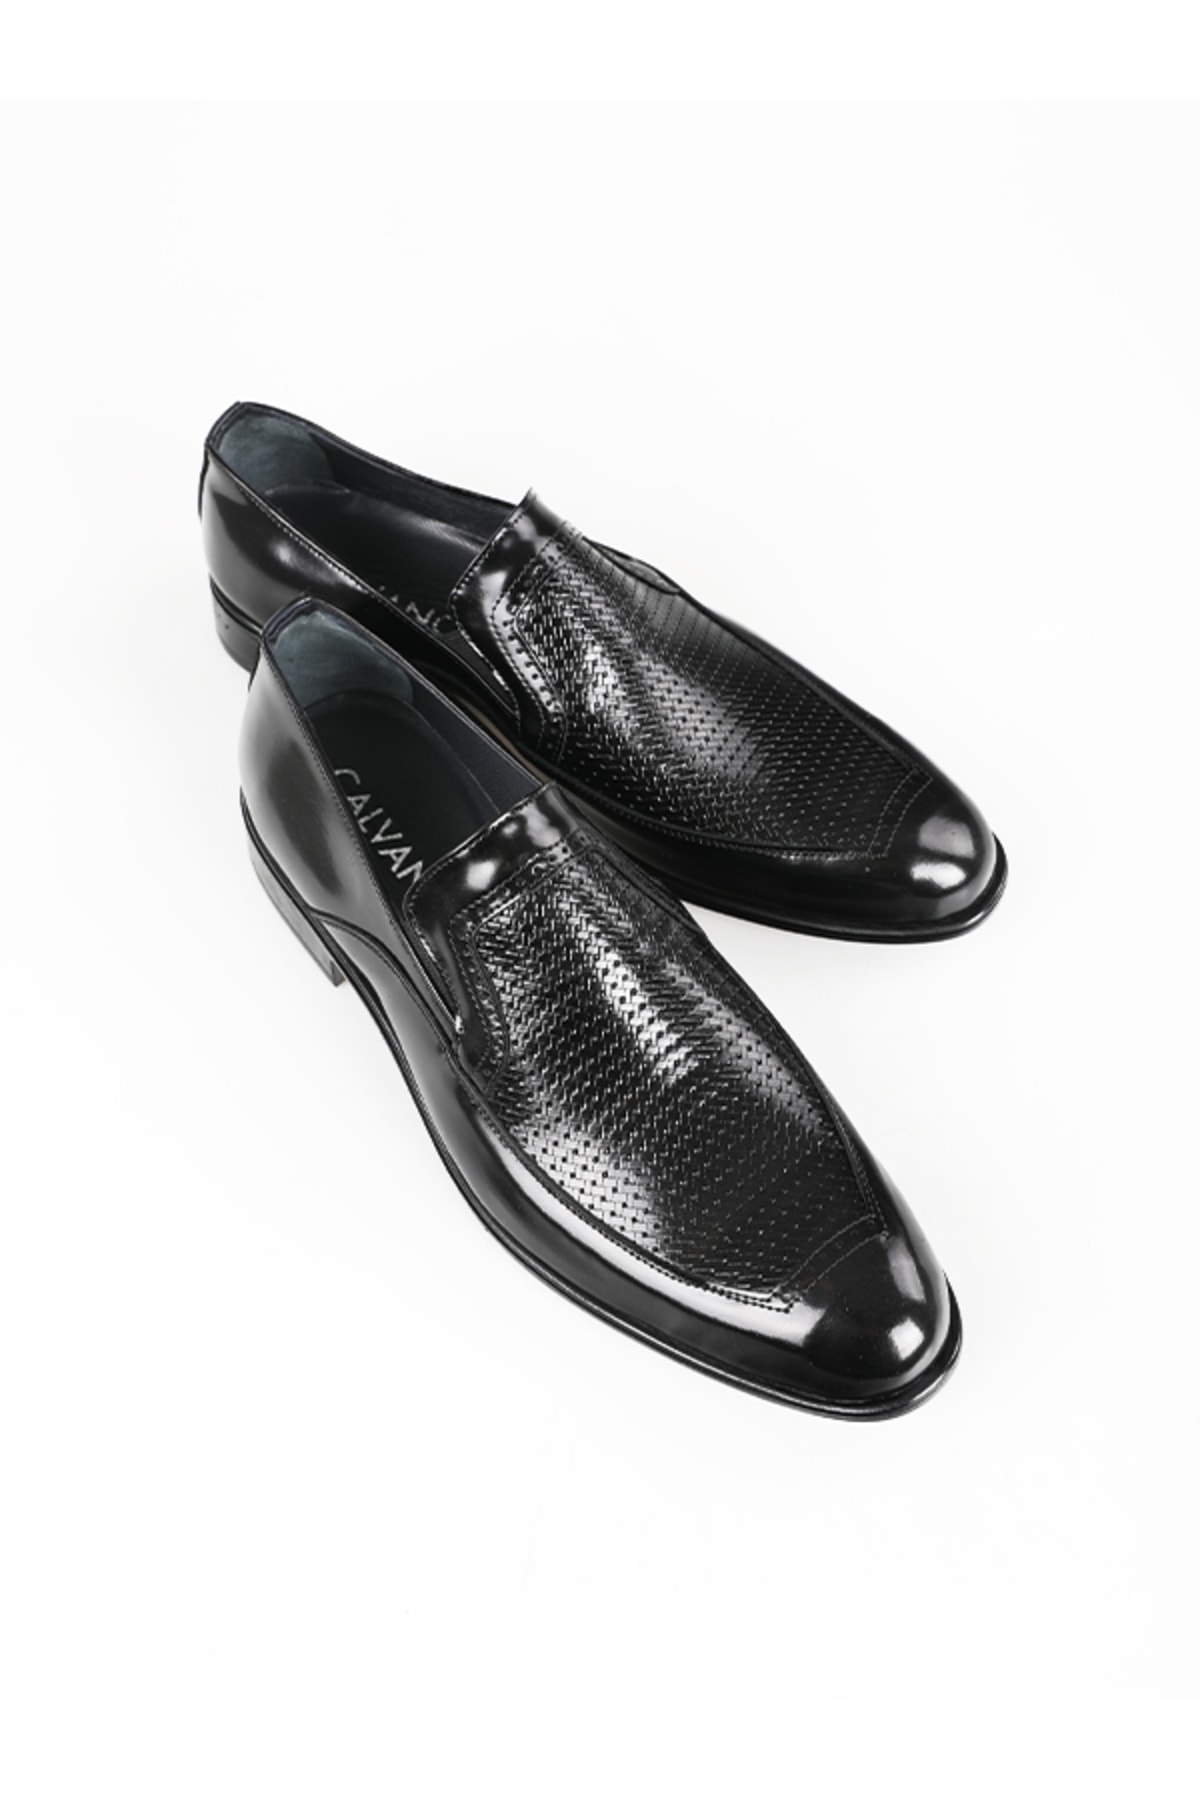 Calvano Hakiki Deri Siyah Erkek Klasik Ayakkabı Mt9090-black Shıny